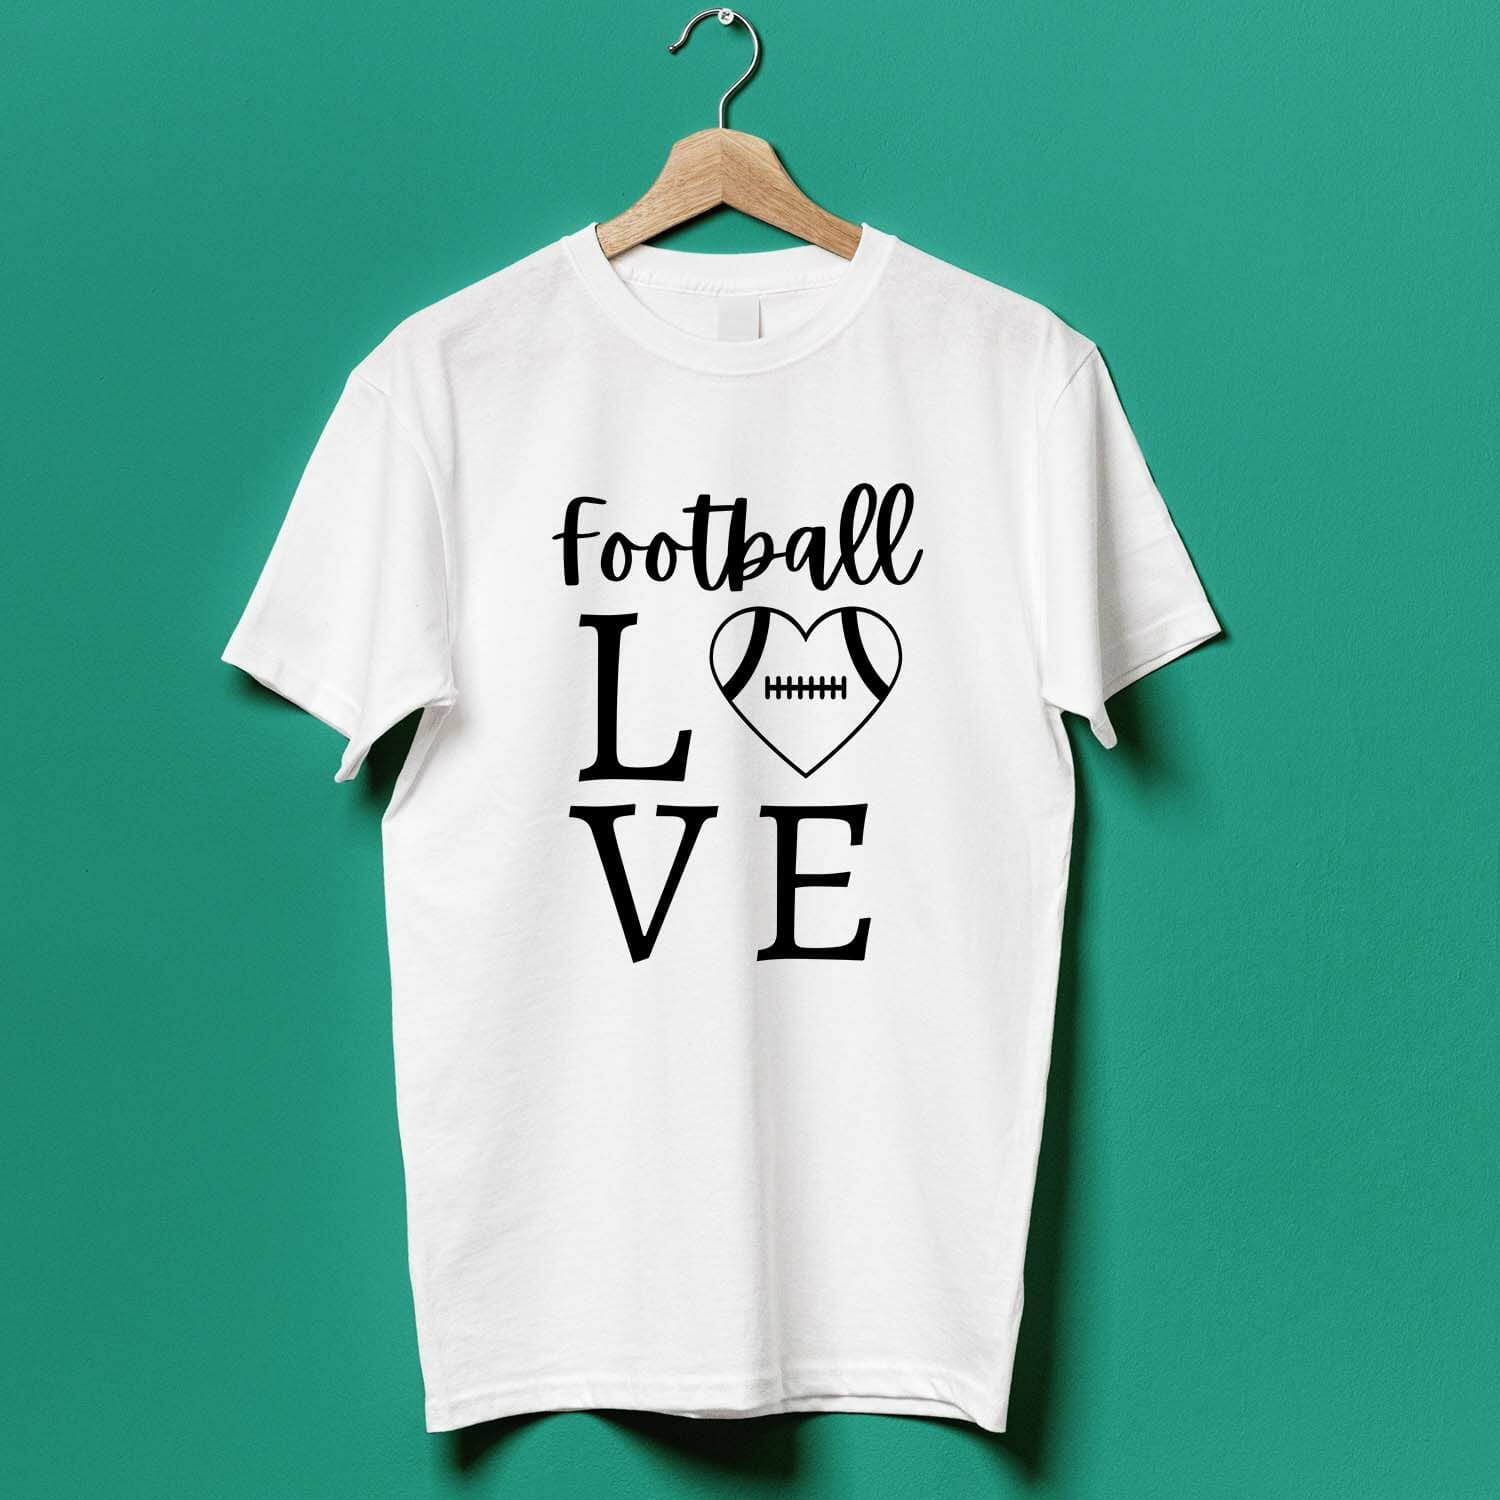 Football Love T-shirt Design